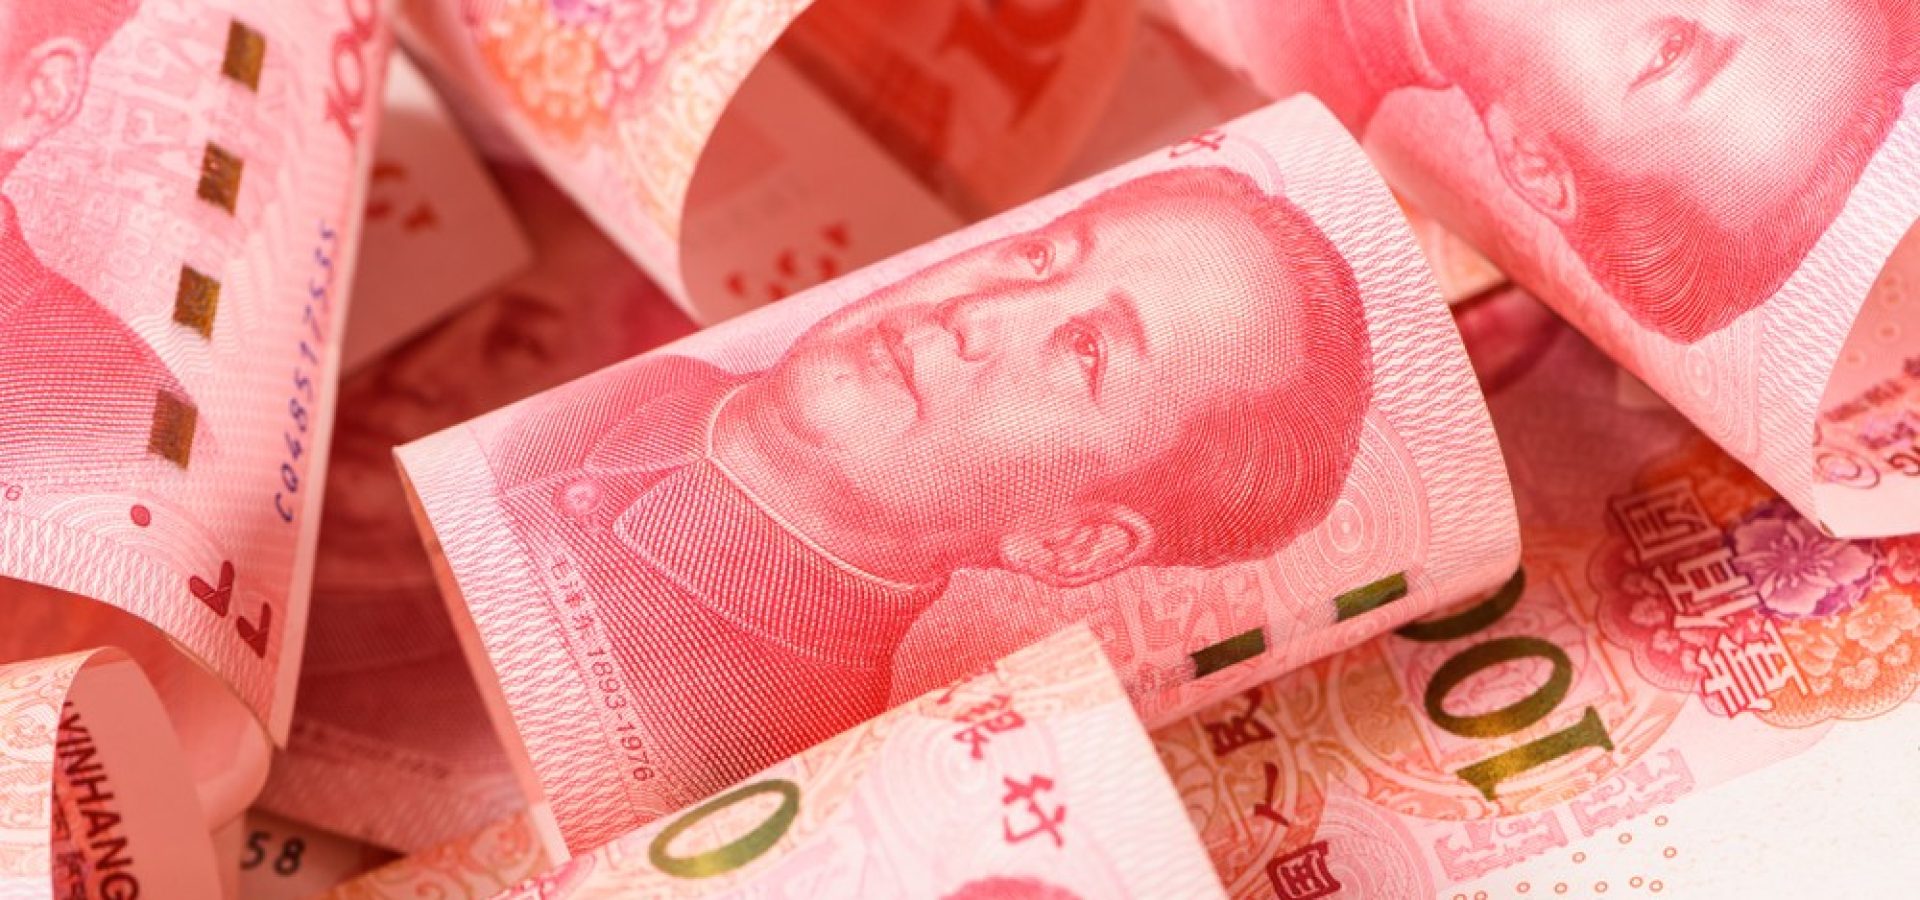 Wibest – Bank of China: Chinese yuan bills.